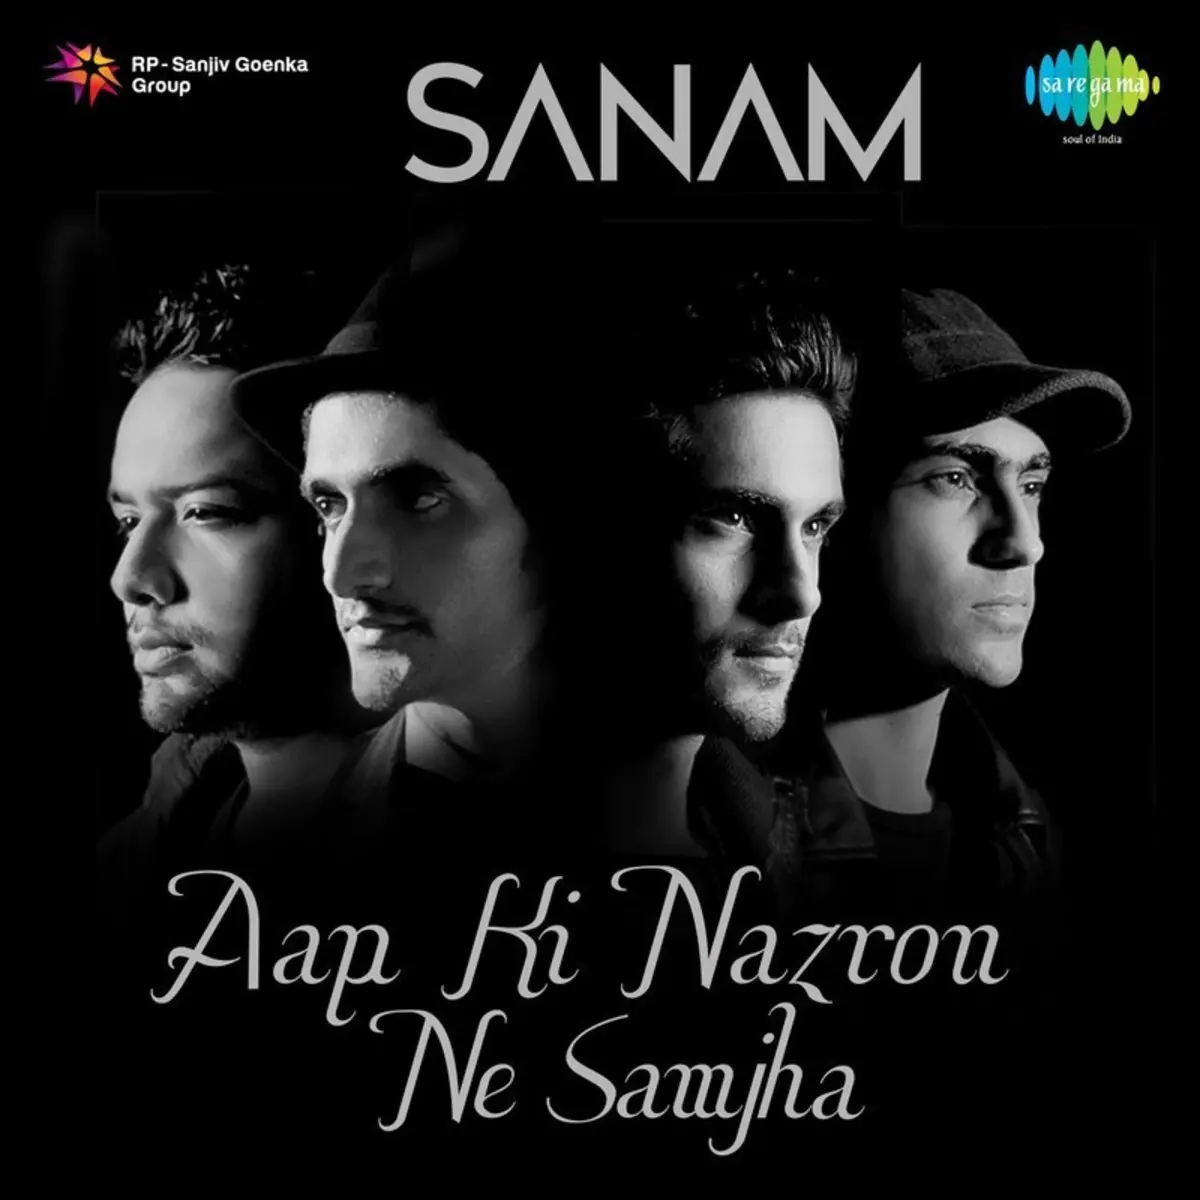 Aapki nazro ne samjha pyar ke kabil mp3 song download Aap Ki Nazron Ne Samjha Song Download Aap Ki Nazron Ne Samjha Mp3 Song Online Free On Gaana Com